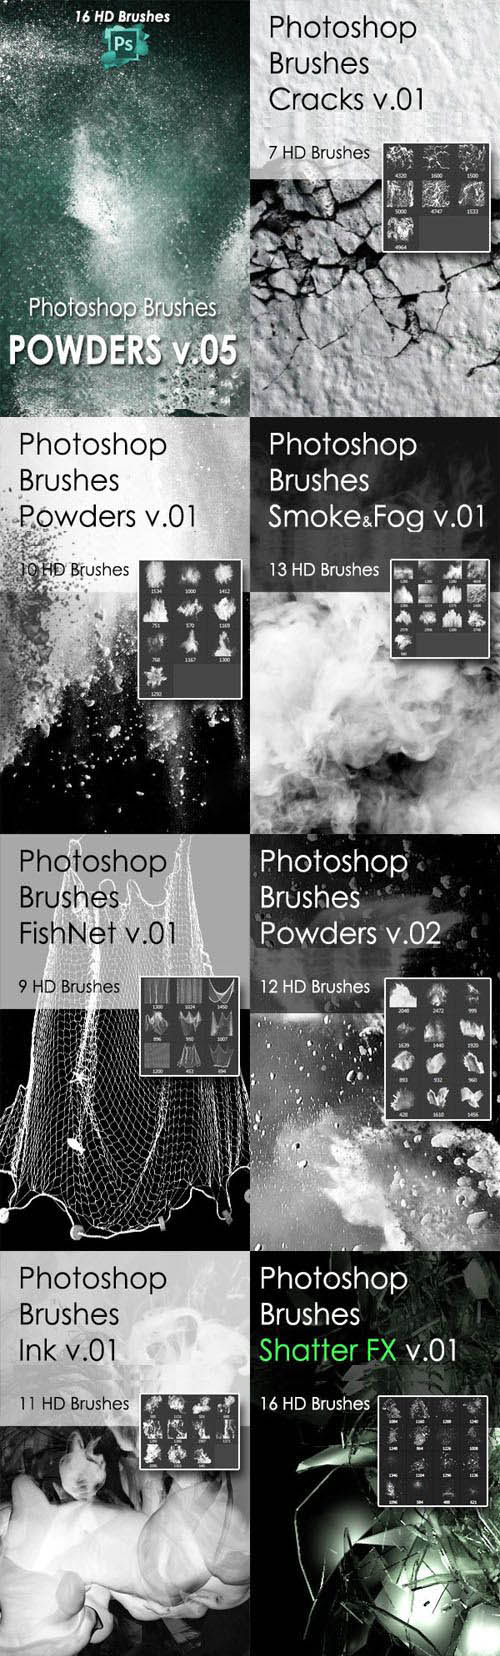 10 Awesome Photoshop Brushes Pack